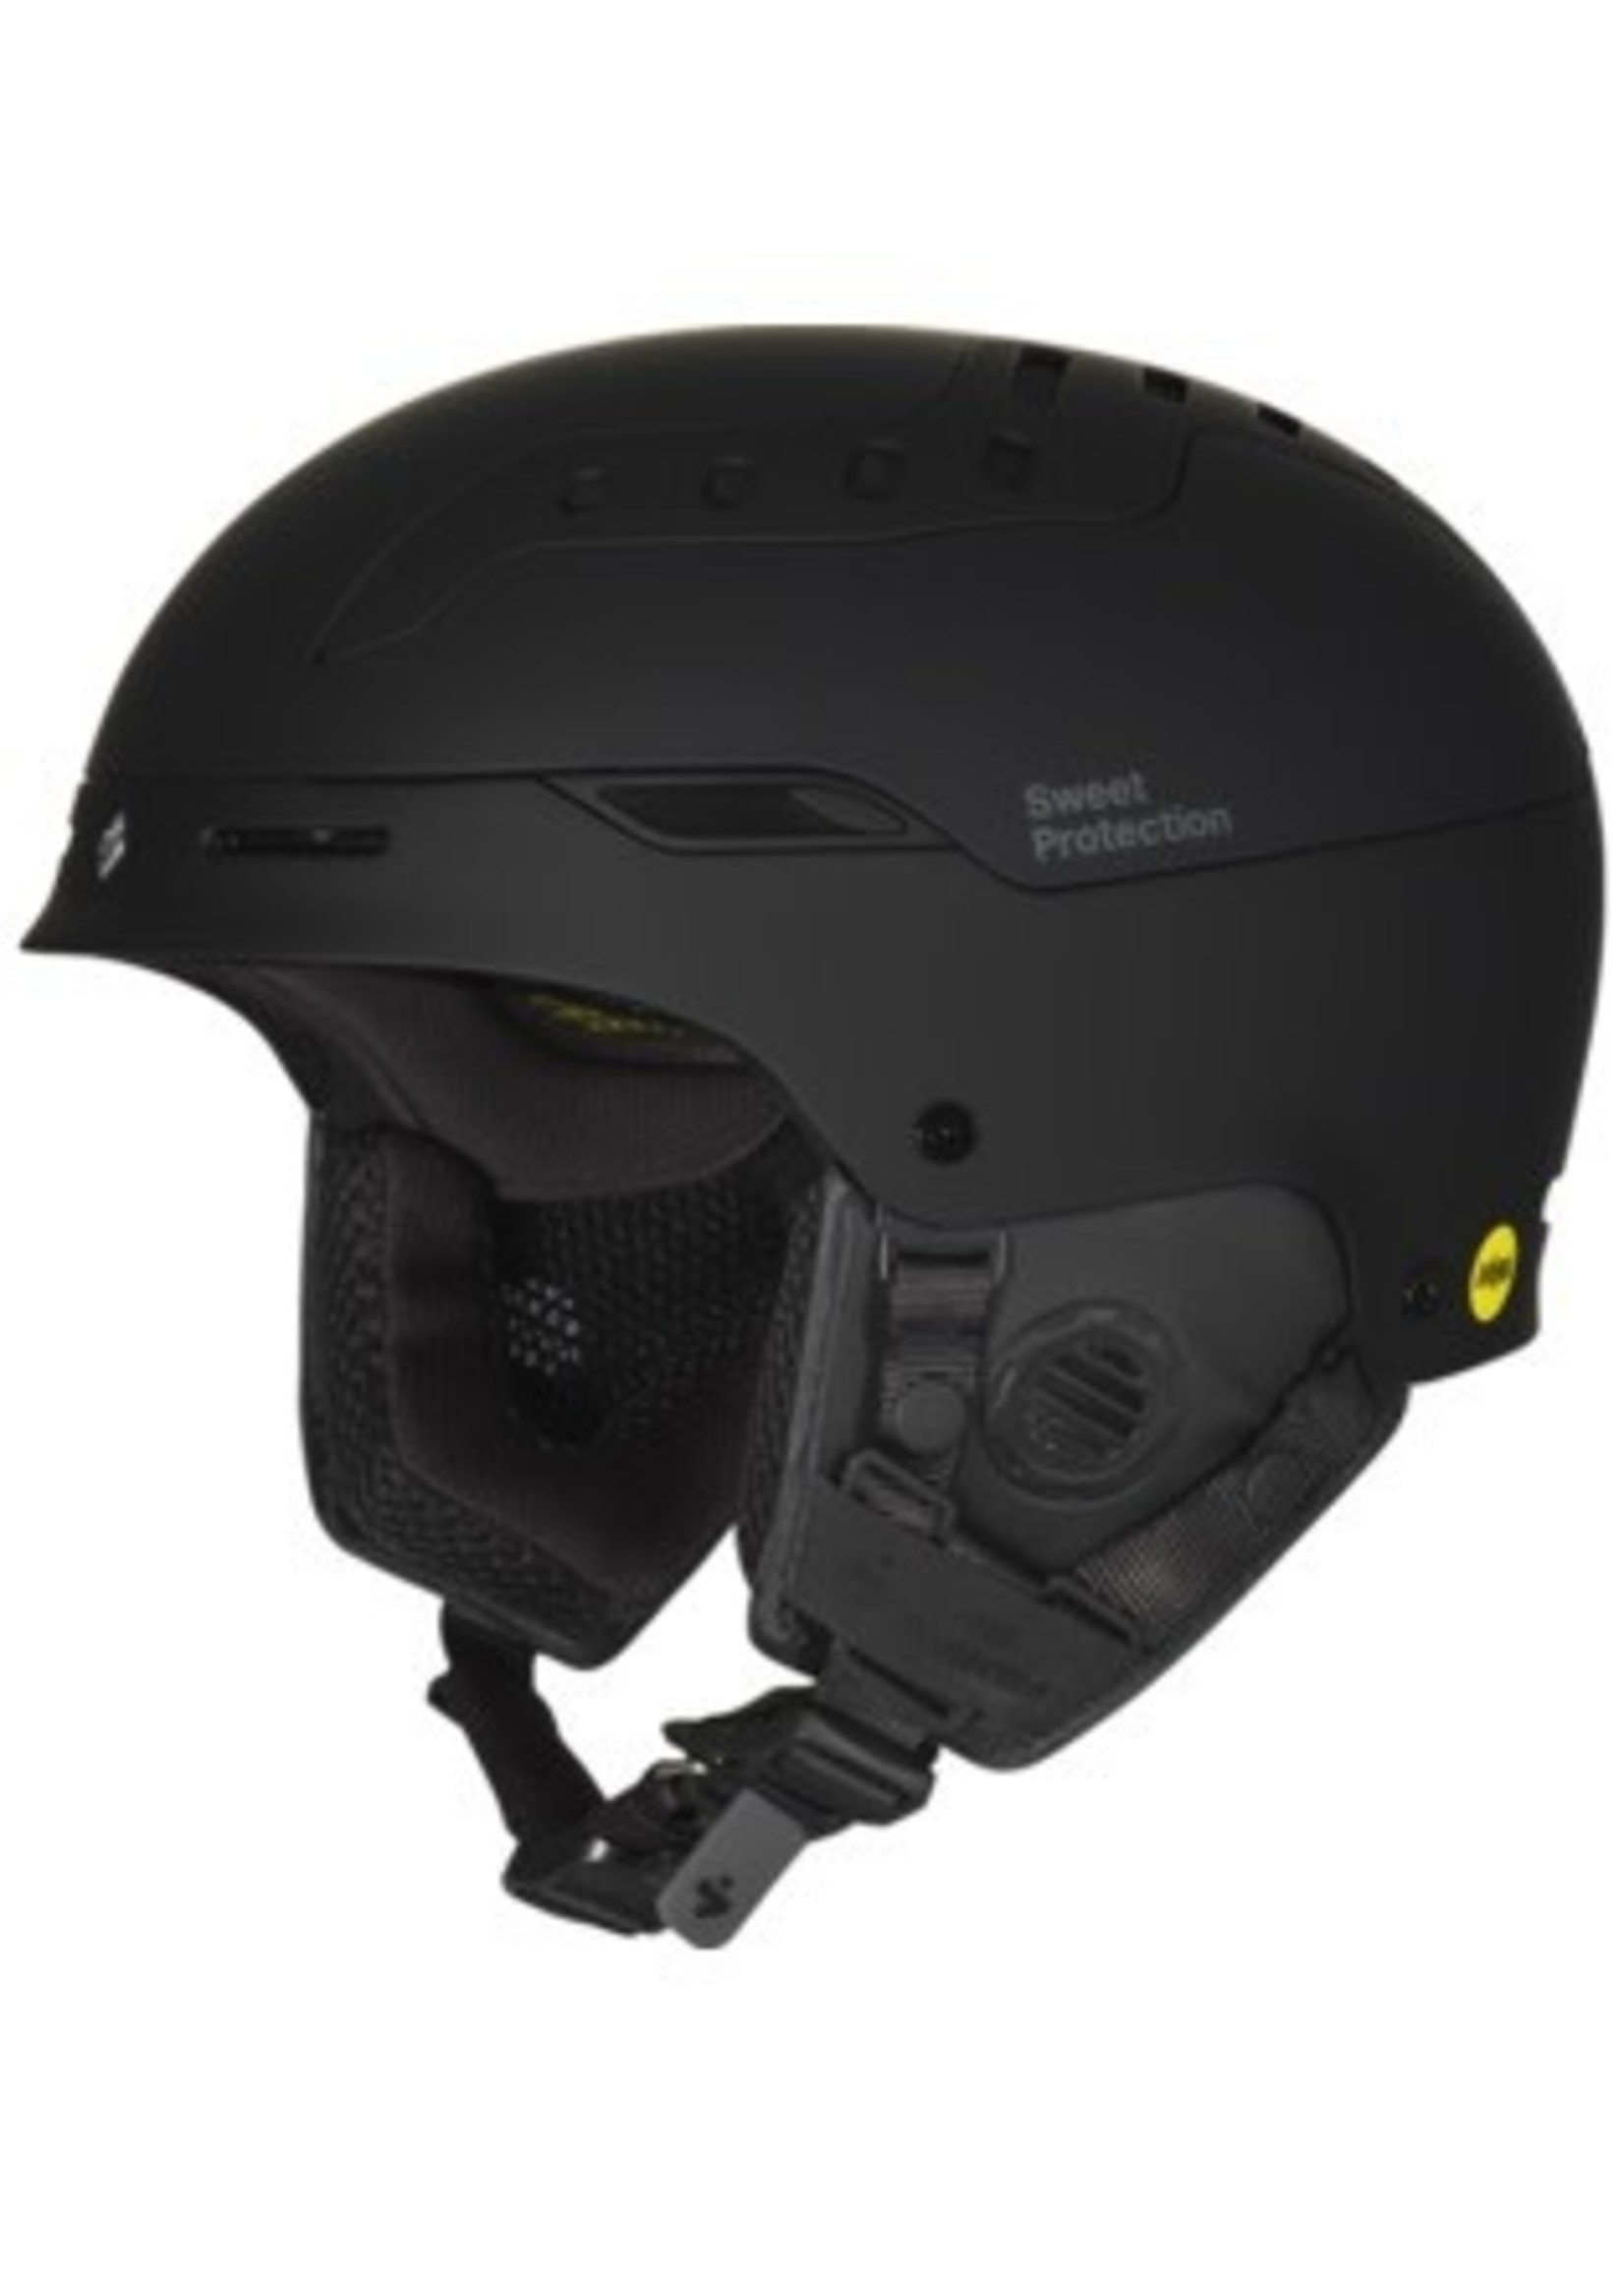 Sweet Protection Alpine Helmet Switcher MIPS